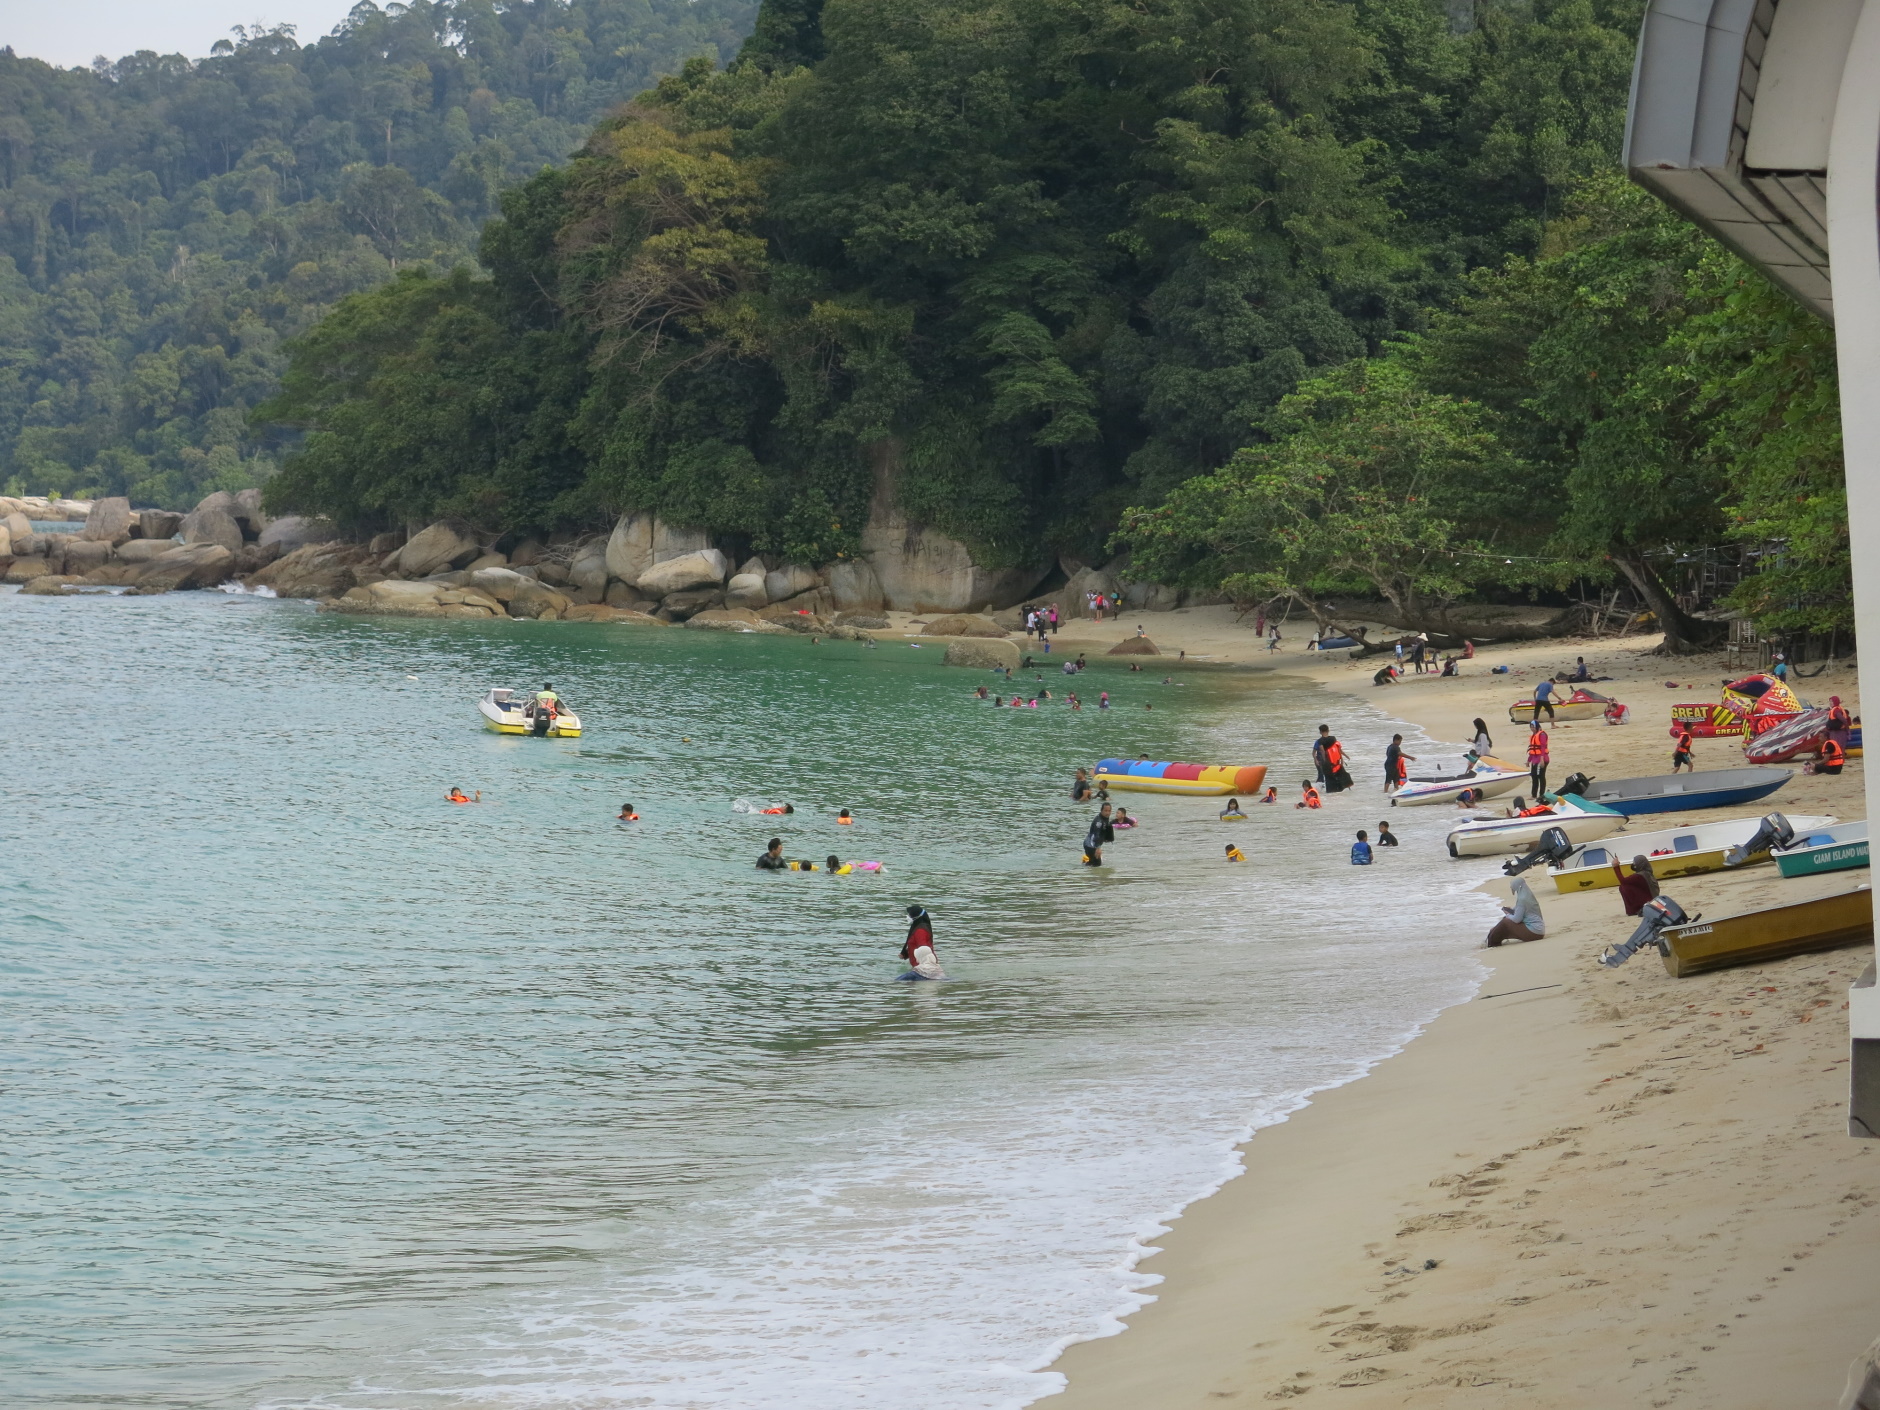 在邦咯岛海滩嬉水 法国5岁小孩被水母螫伤死亡